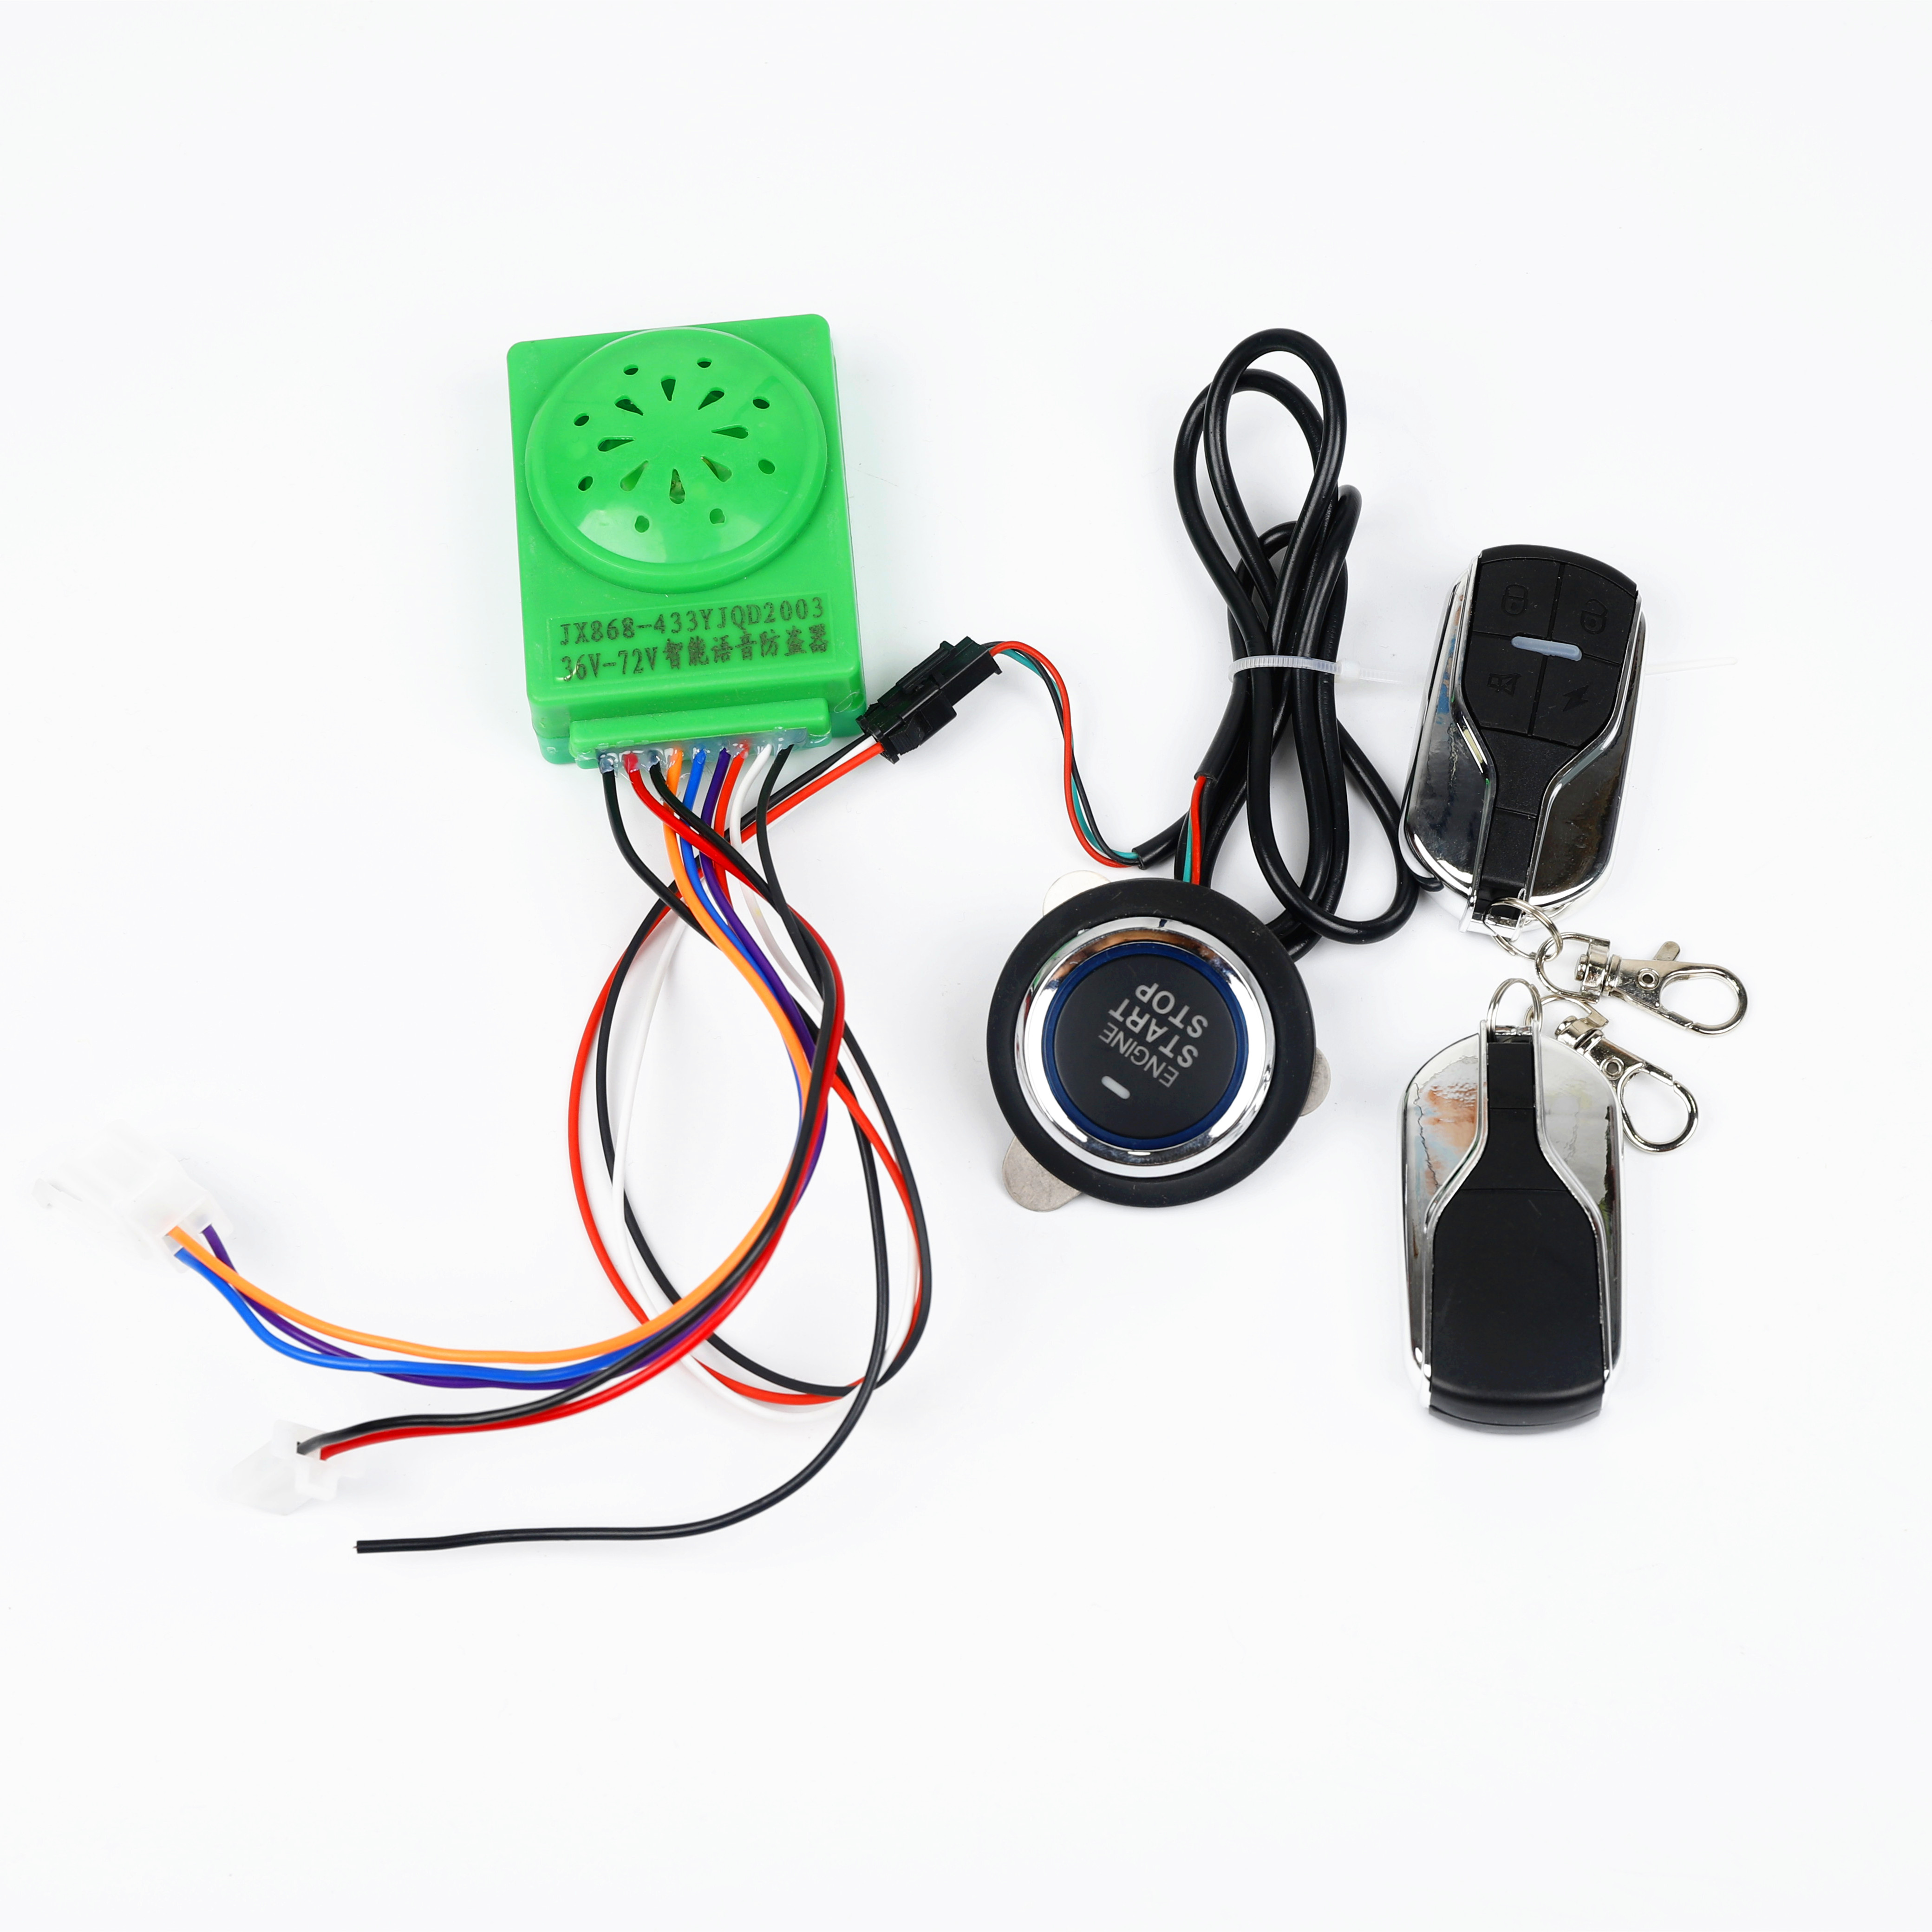 哈雷电动车报警器电瓶车防盗器 智能电机锁一键启动遥控报警锁